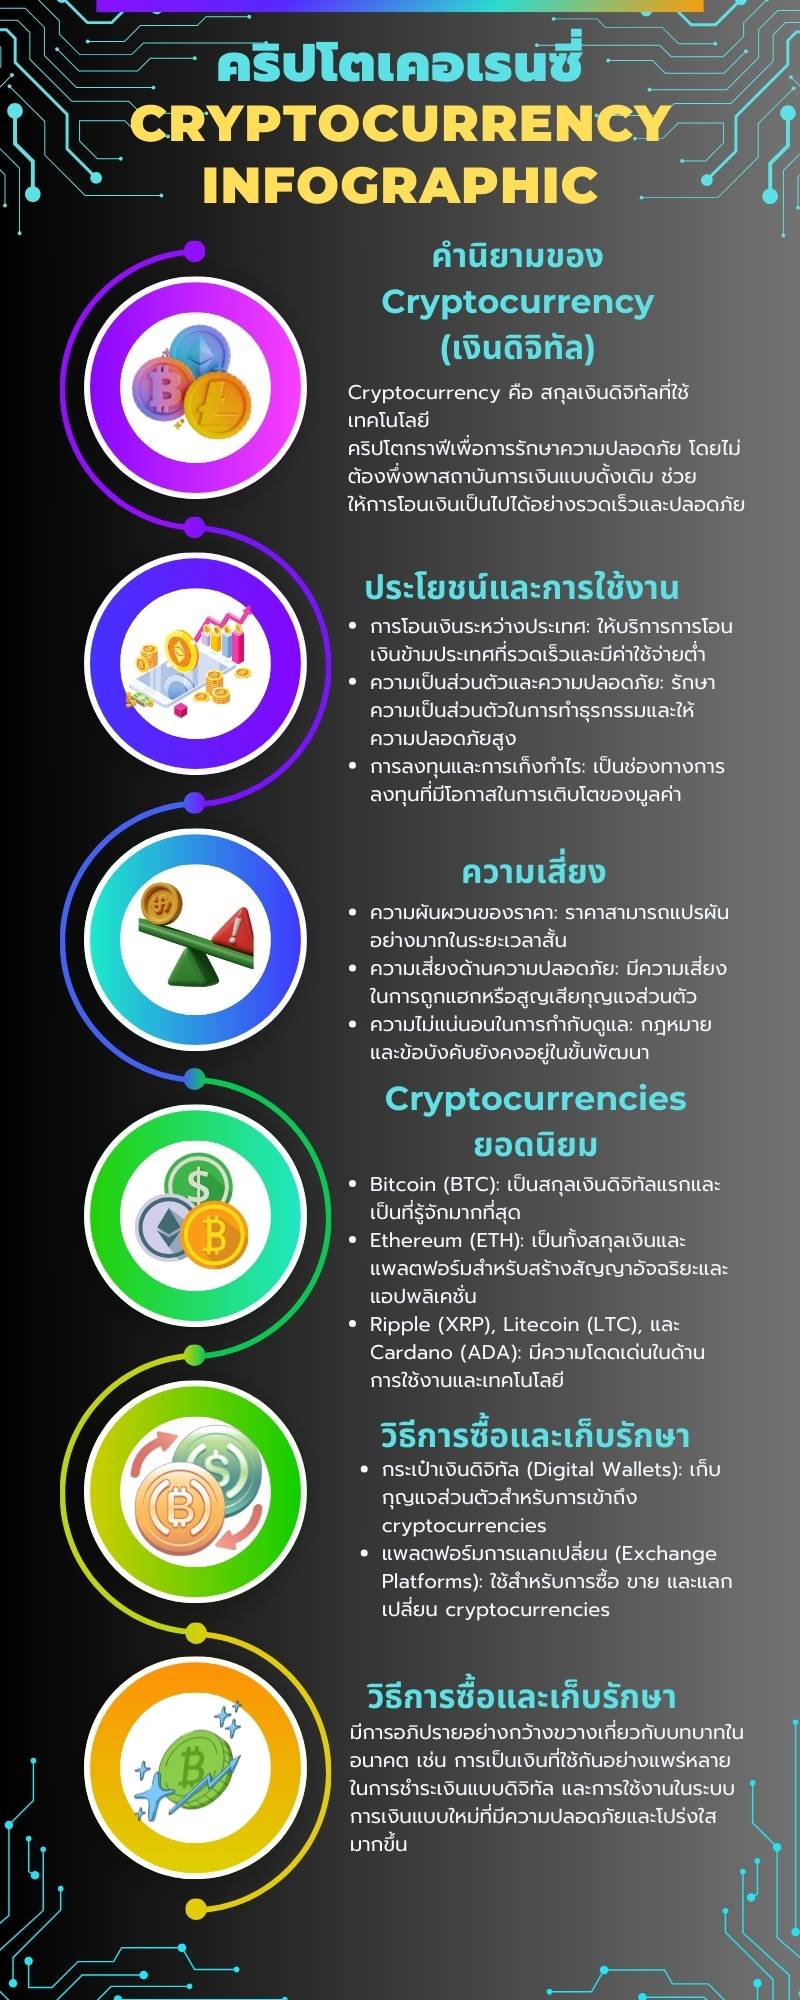 คริปโตเคอเรนซี่อินโฟกราฟฟิก cryptocurrency infographic thai